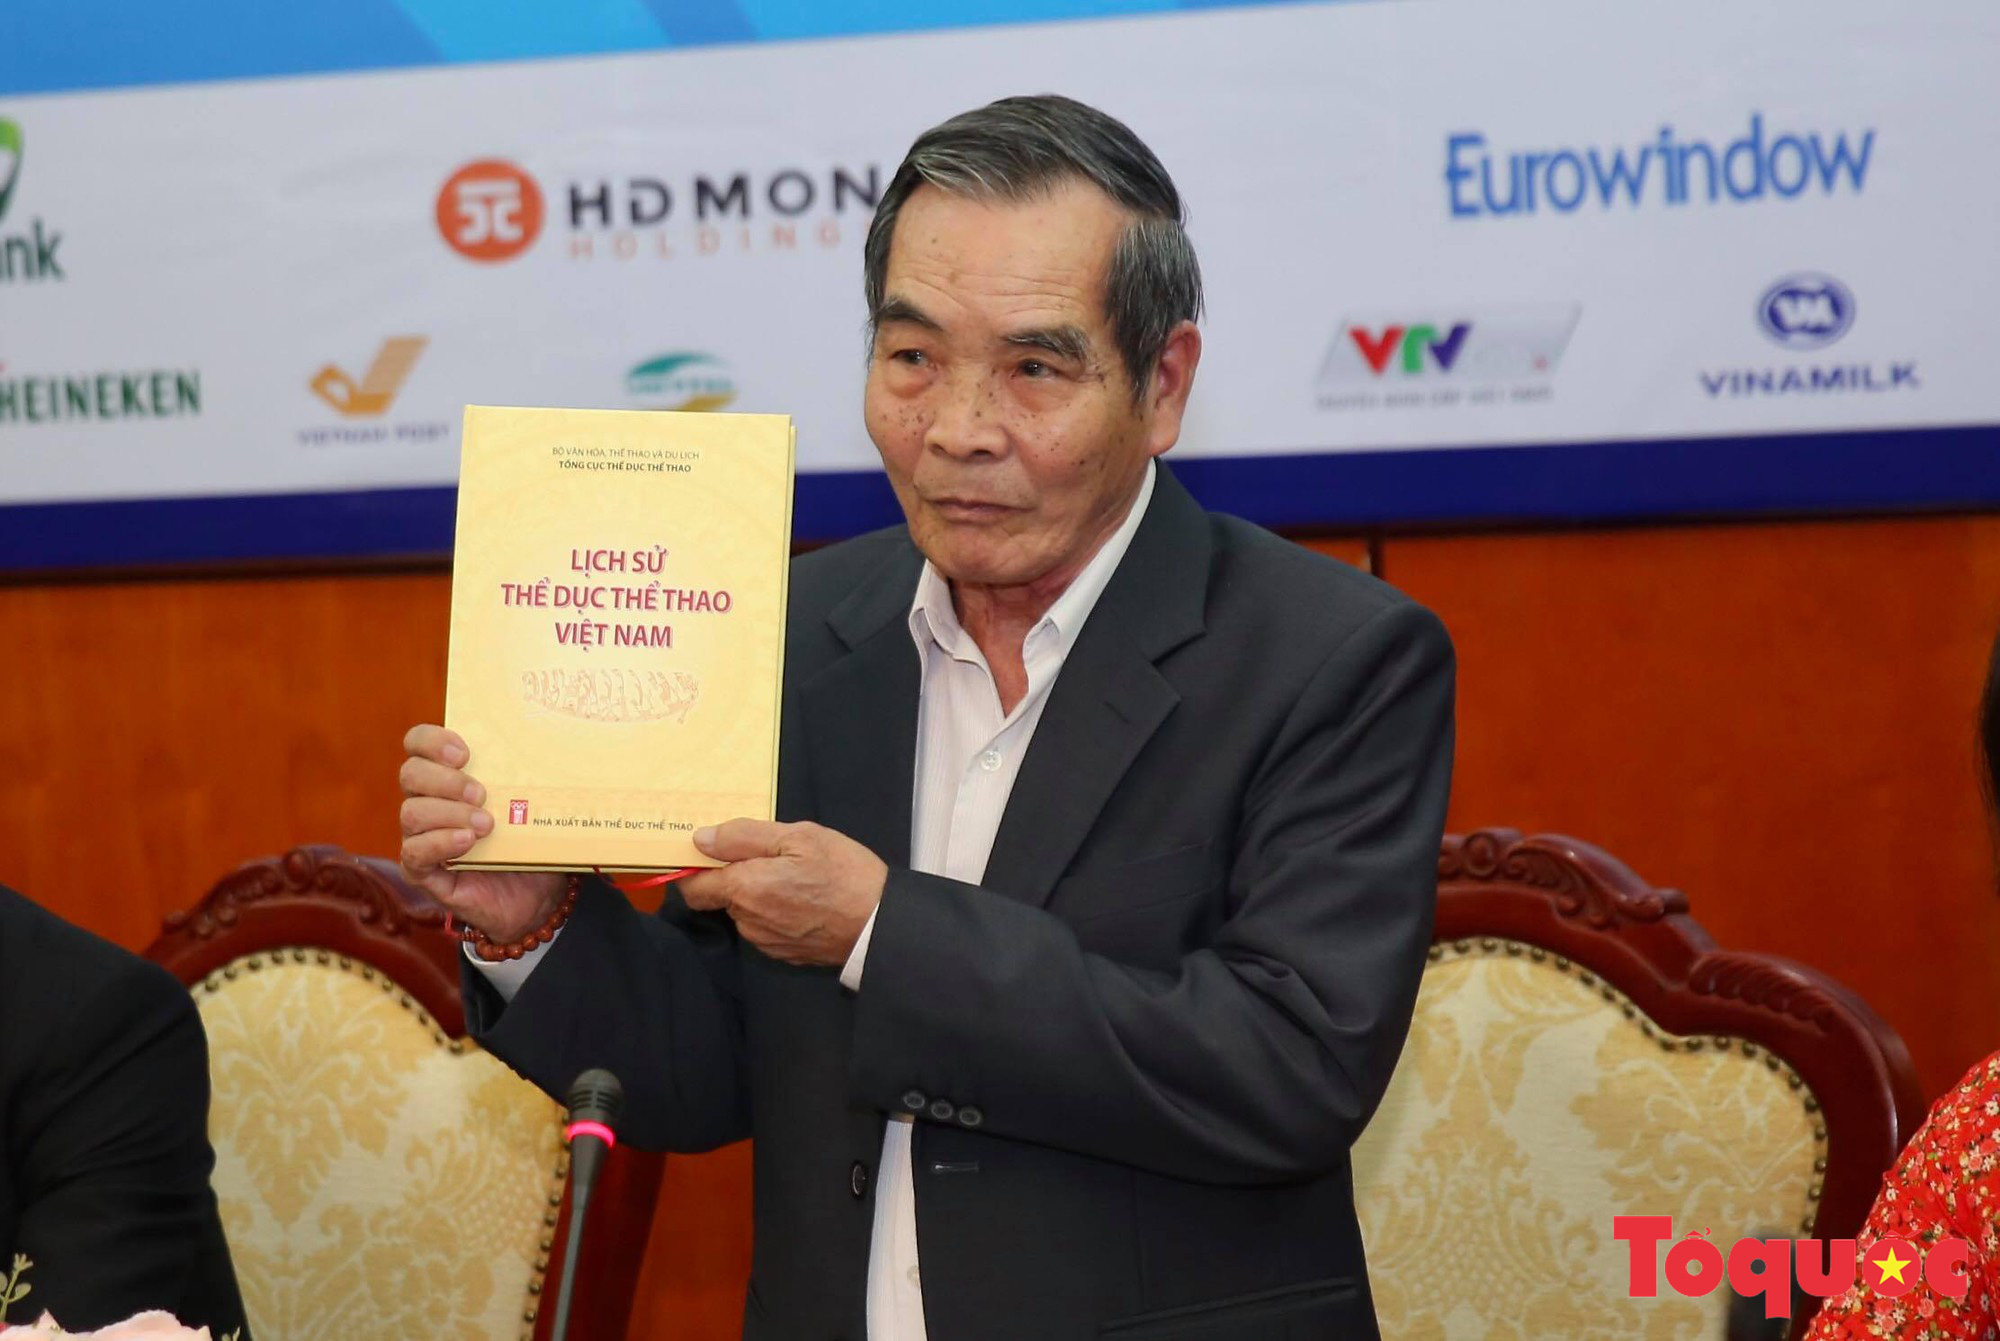 Ra mắt Trung tâm Báo chí Đại hội Thể thao toàn quốc 2018 và ra mắt cuốn sách lịch sử Thể dục Thể thao Việt Nam - Ảnh 6.